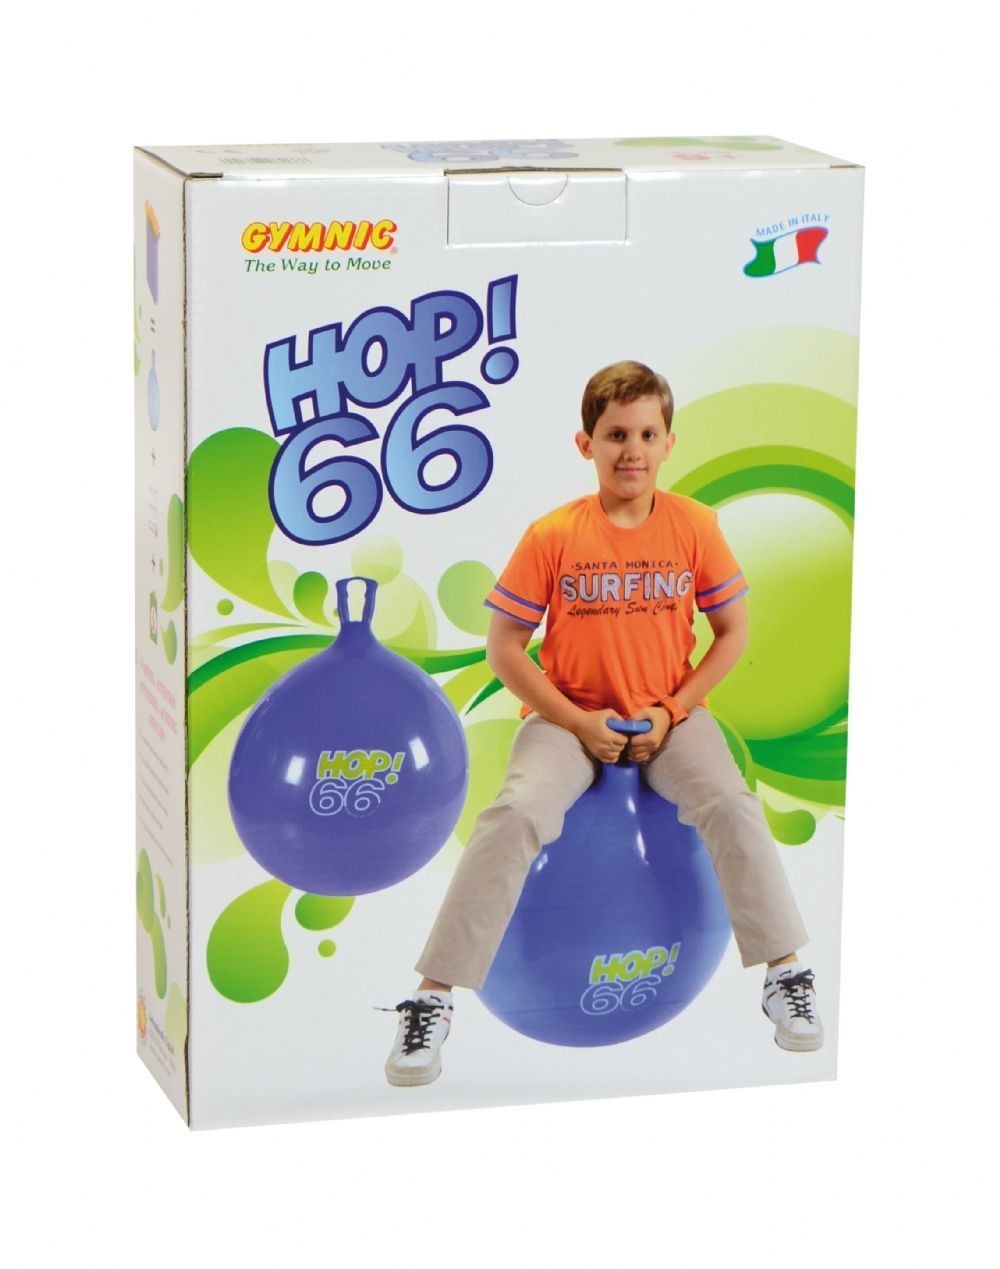 Ballon sauteur - hop 66 : bleu